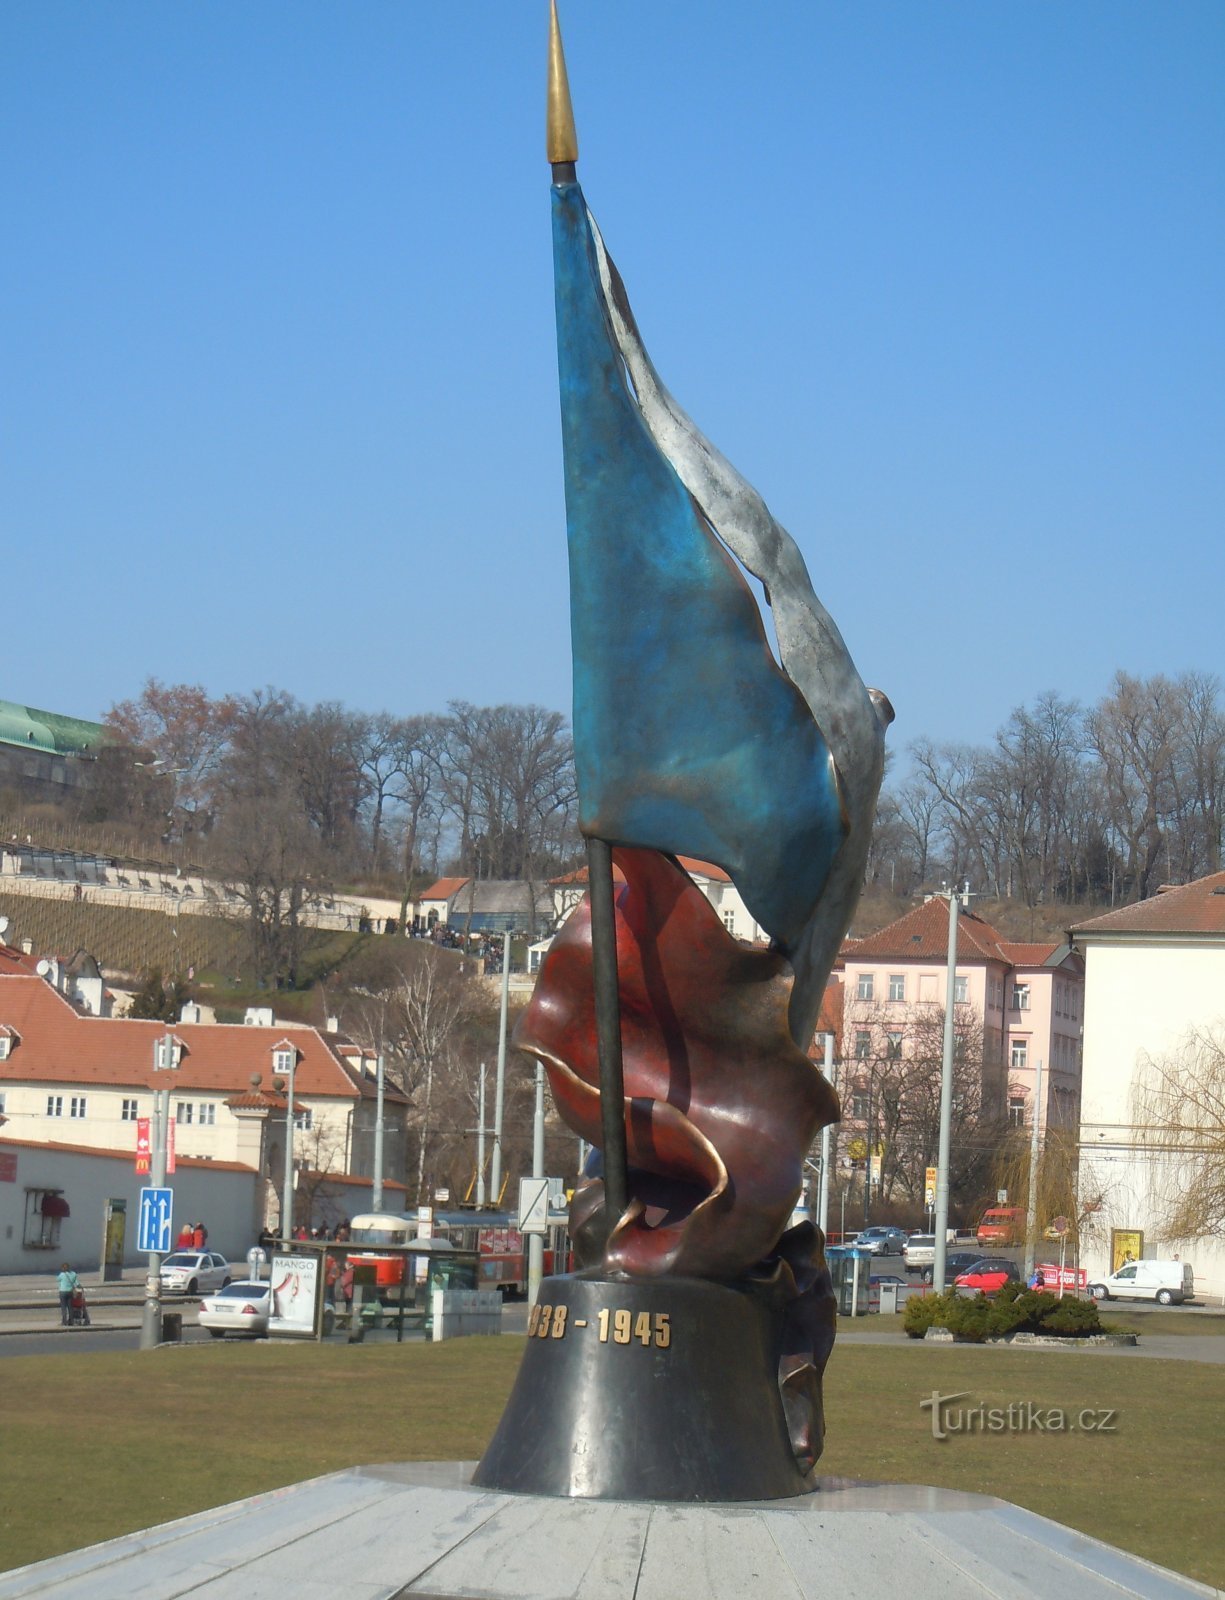 Monumentul celei de-a doua rezistențe, autor Vladimír Preclík